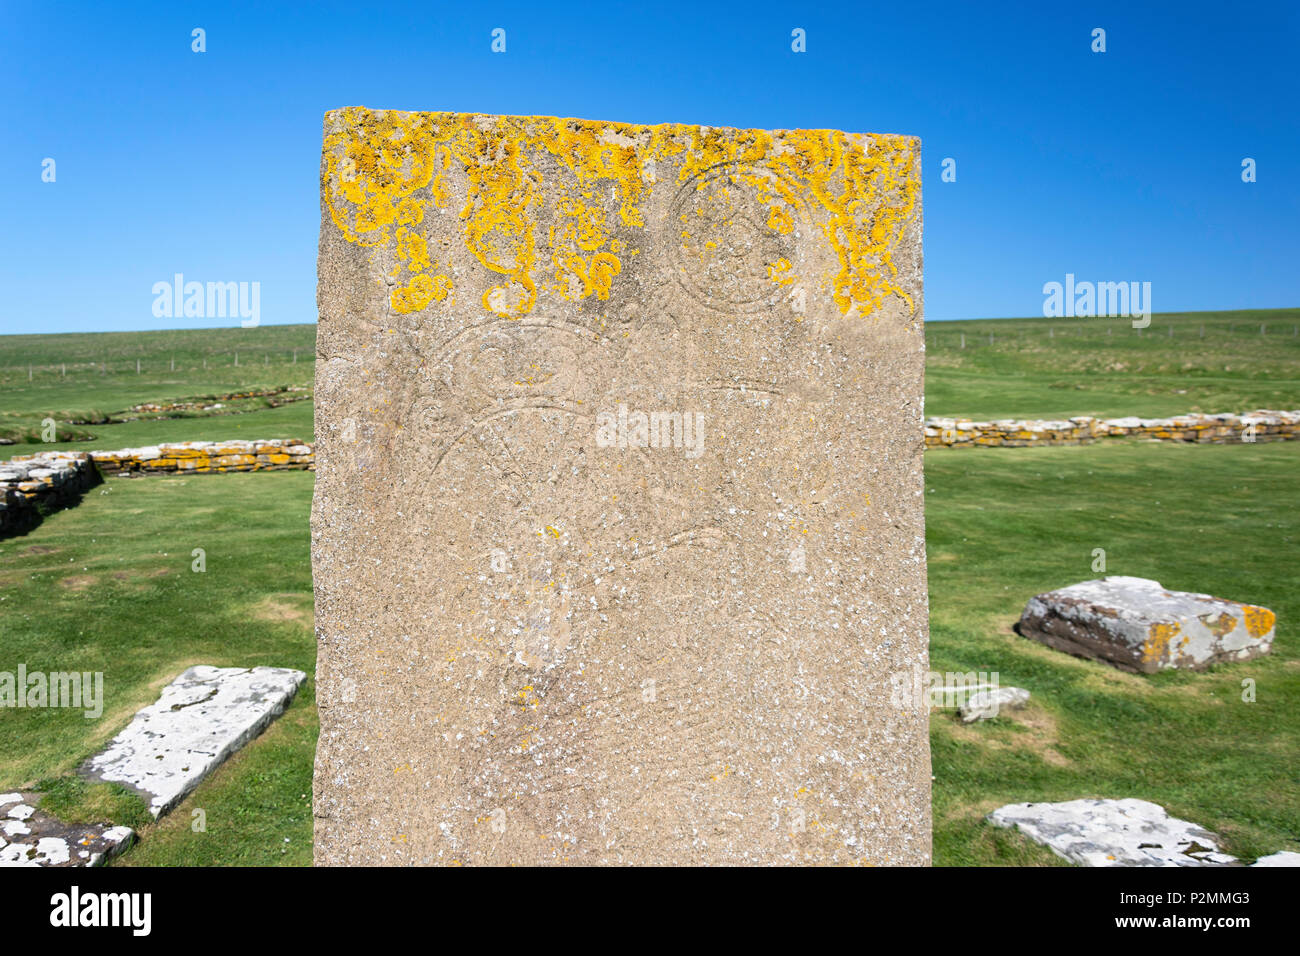 Plaque de pierre Picte avec inscription sur la Brough de Birsay Island, Birsay, Mainland, îles Orcades, îles du Nord, Ecosse, Royaume-Uni Banque D'Images